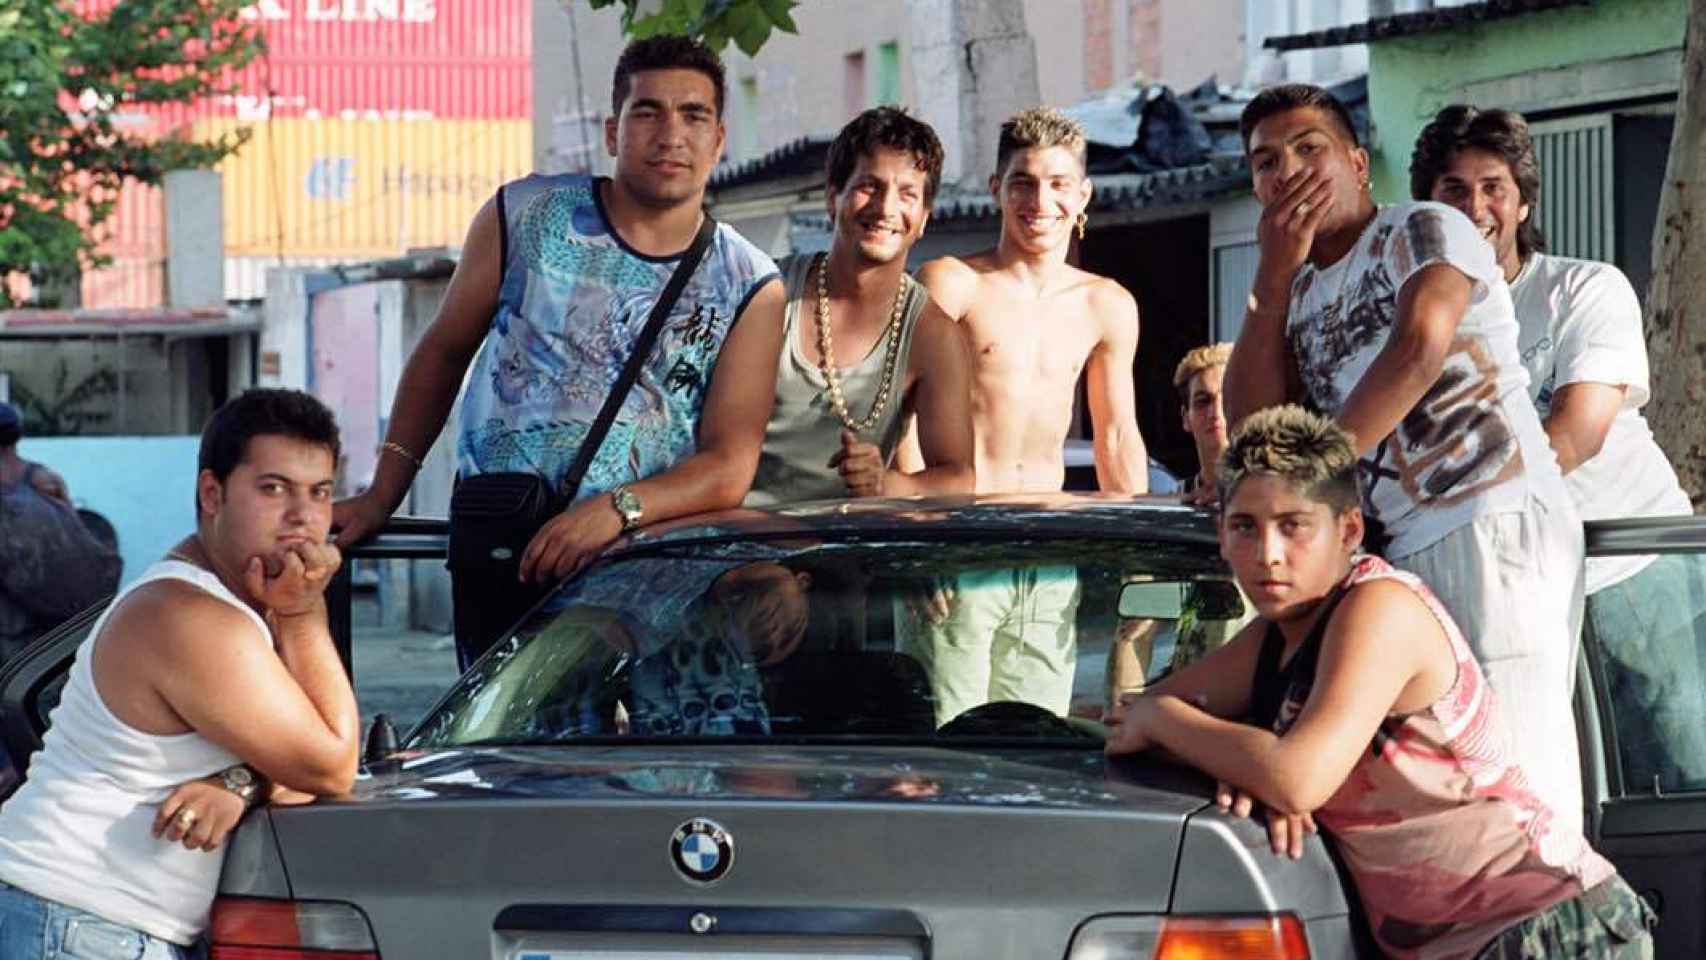 La última generación de jóvenes de Can Tunis, barrio derribado en 2005.